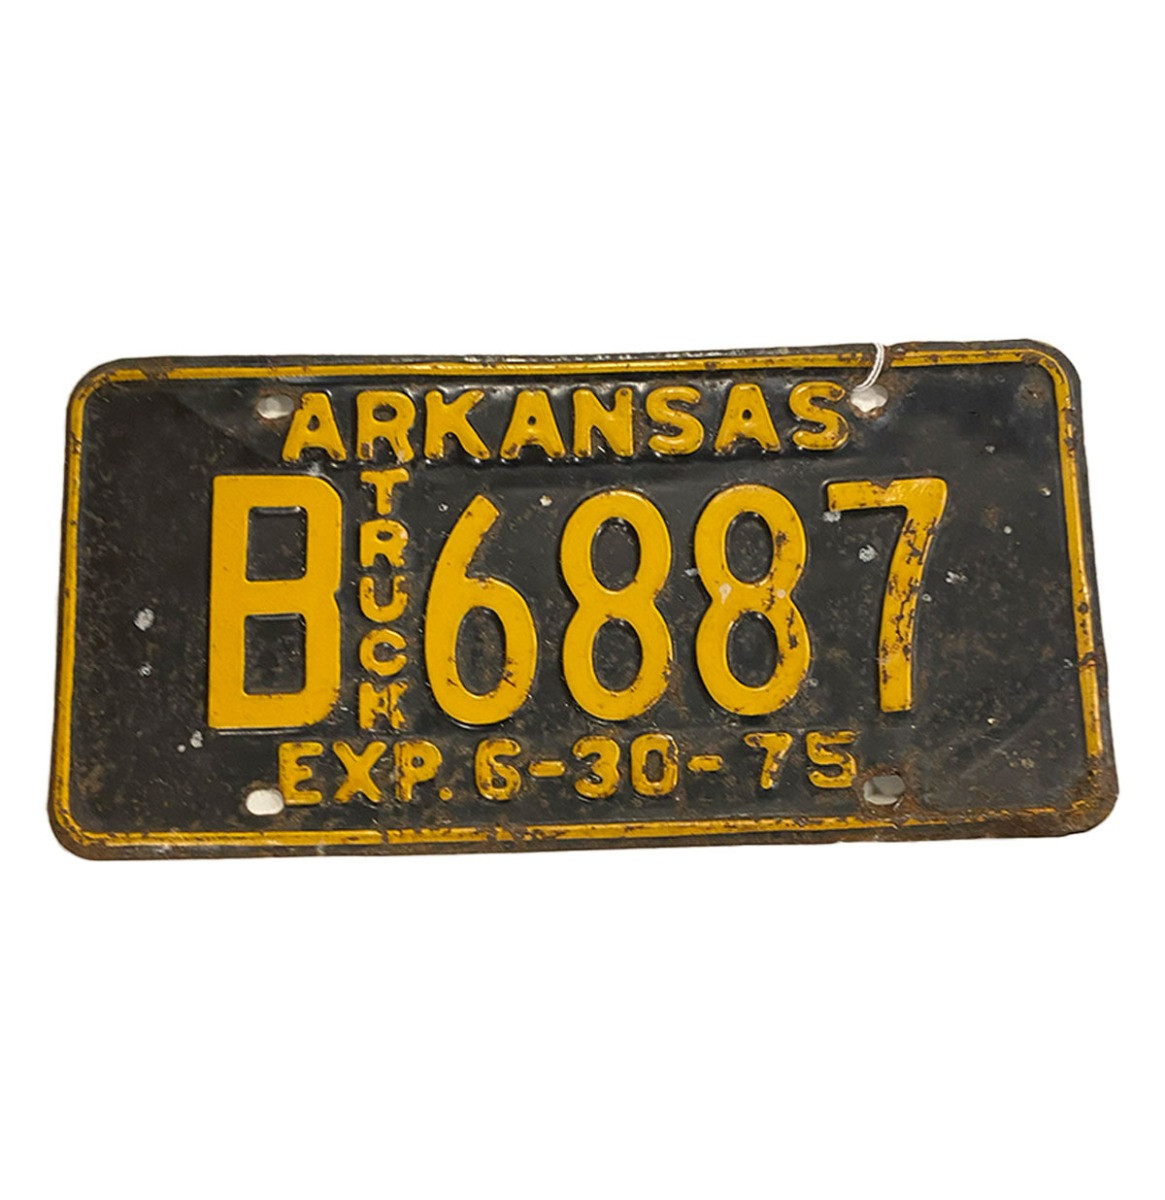 Arkansas Truck Kentekenplaat - 1975 - Origineel